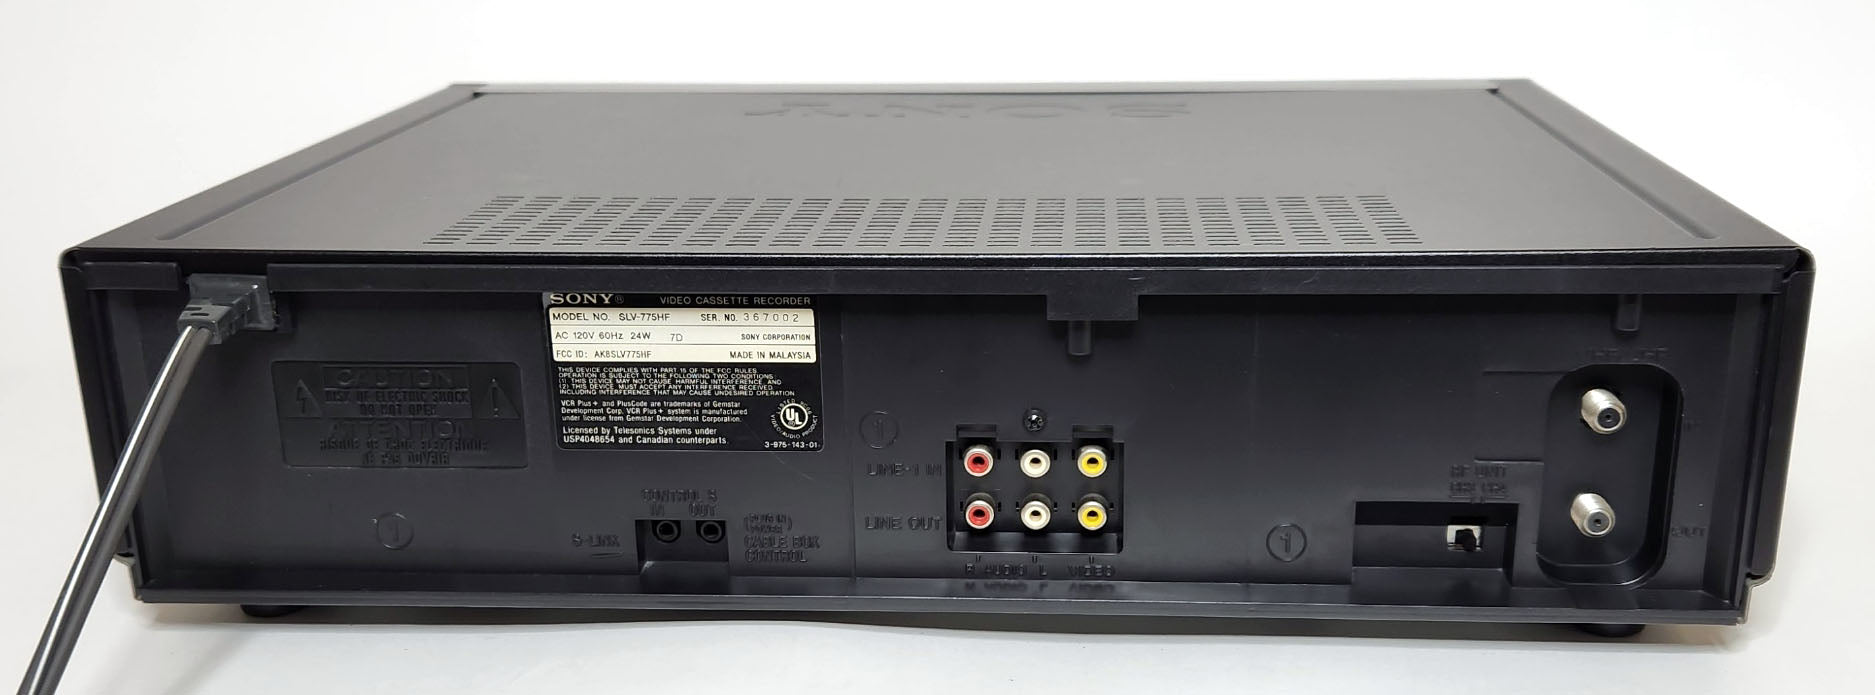 Sony SLV-775HF VCR, 4-Head Hi-Fi Stereo - Rear